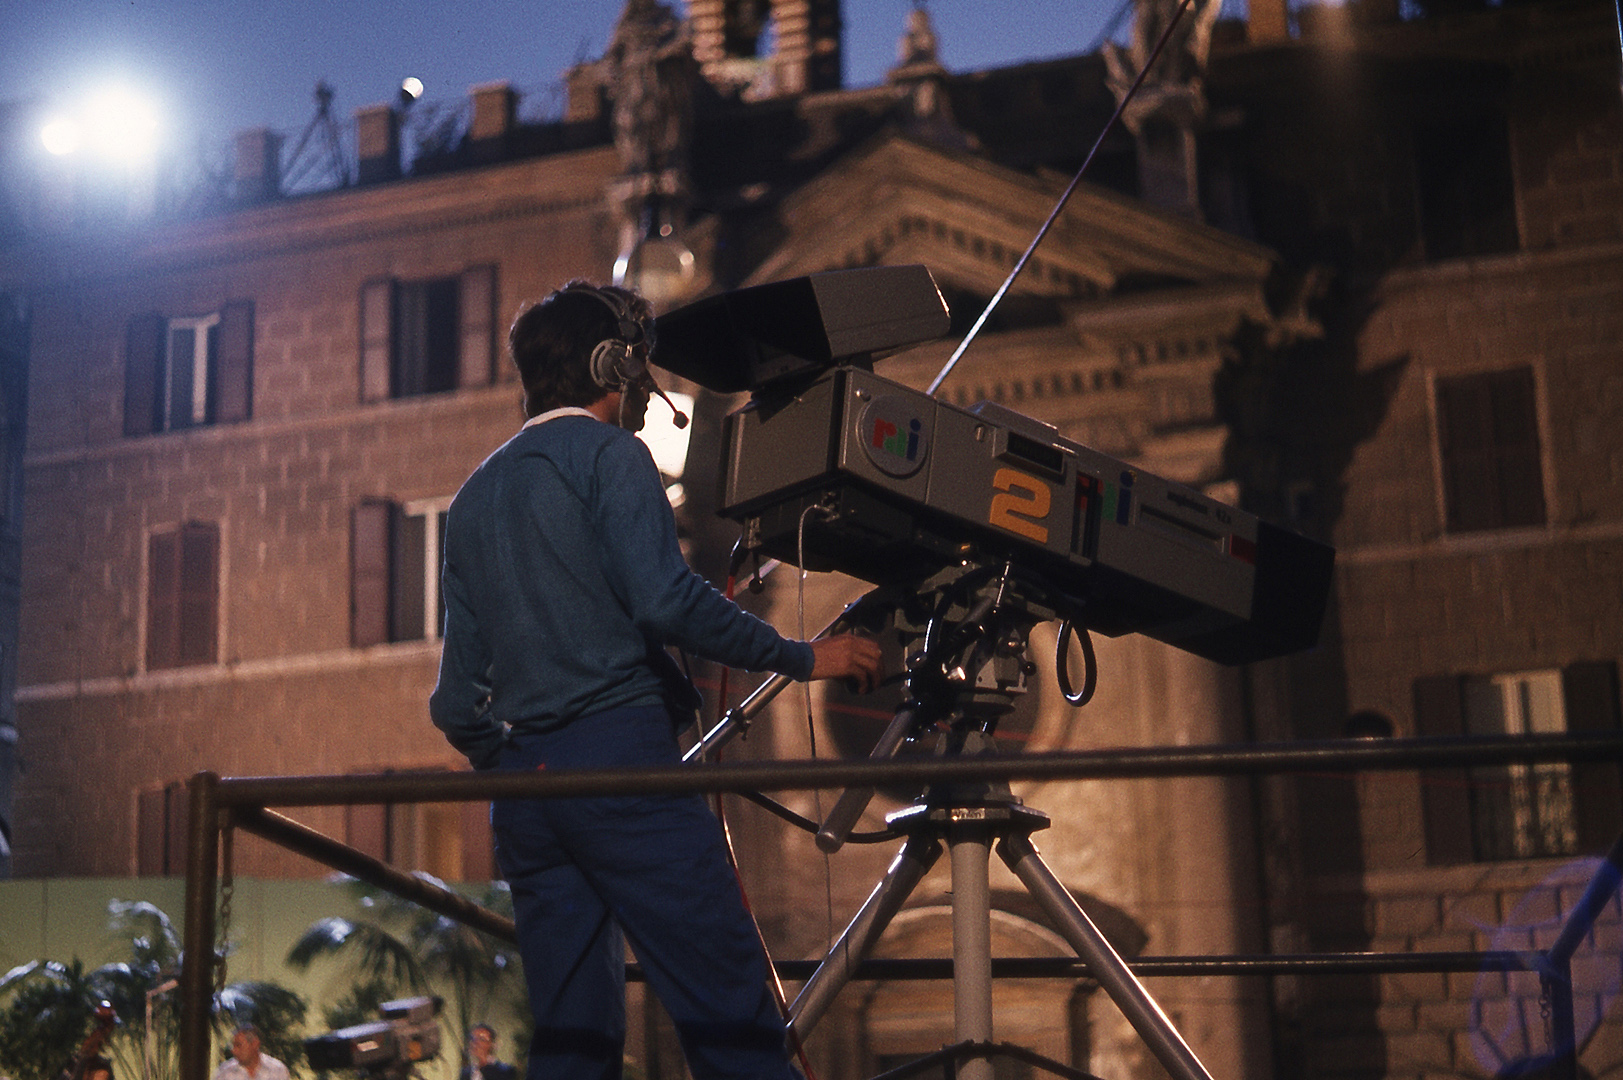 Cameraman op de Piazza Farnese (Rome); Cameraman on Piazza Farnese in Rome